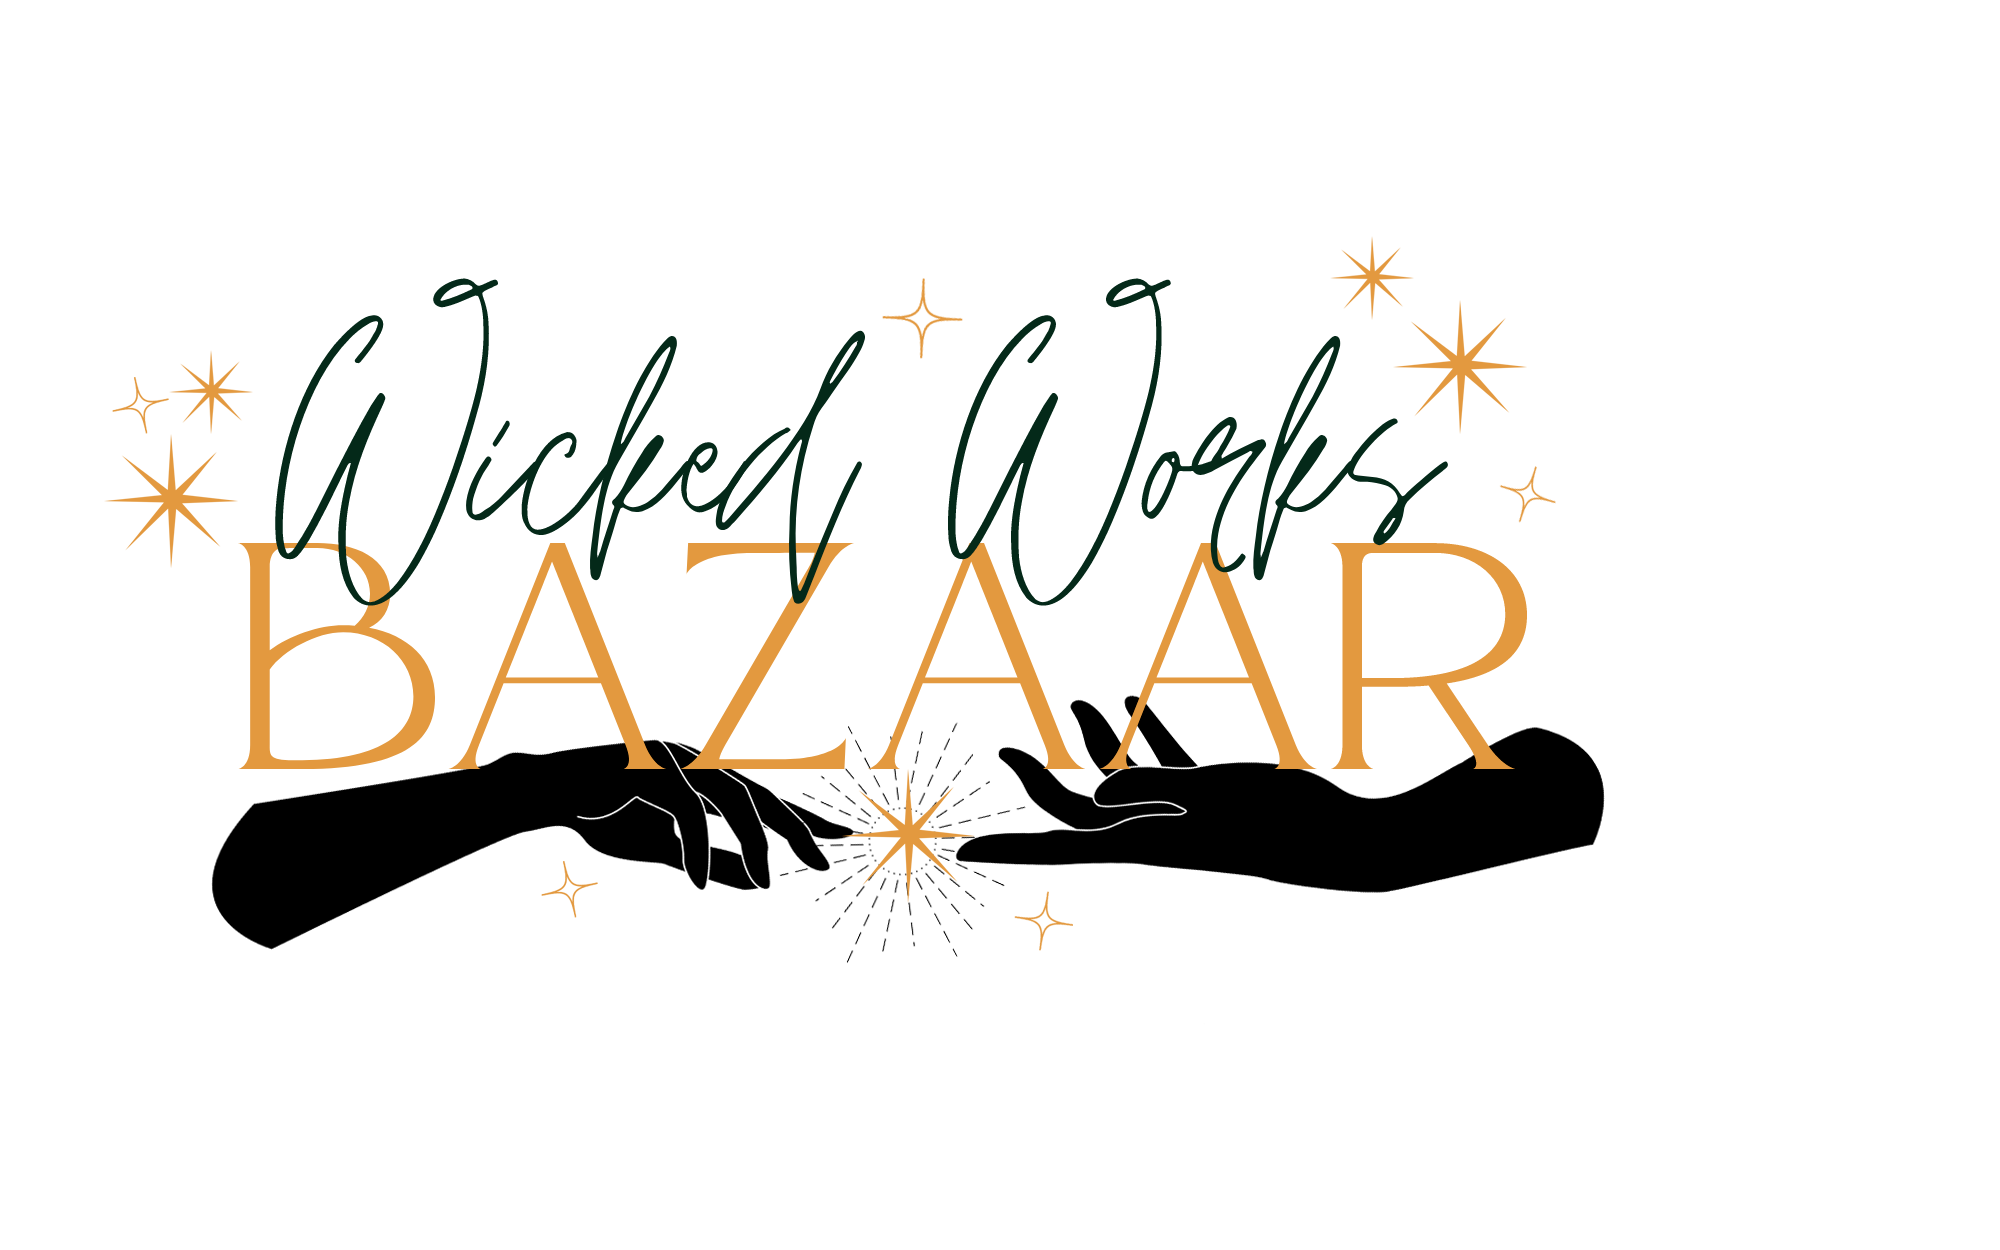 Wicked Works Bazaar